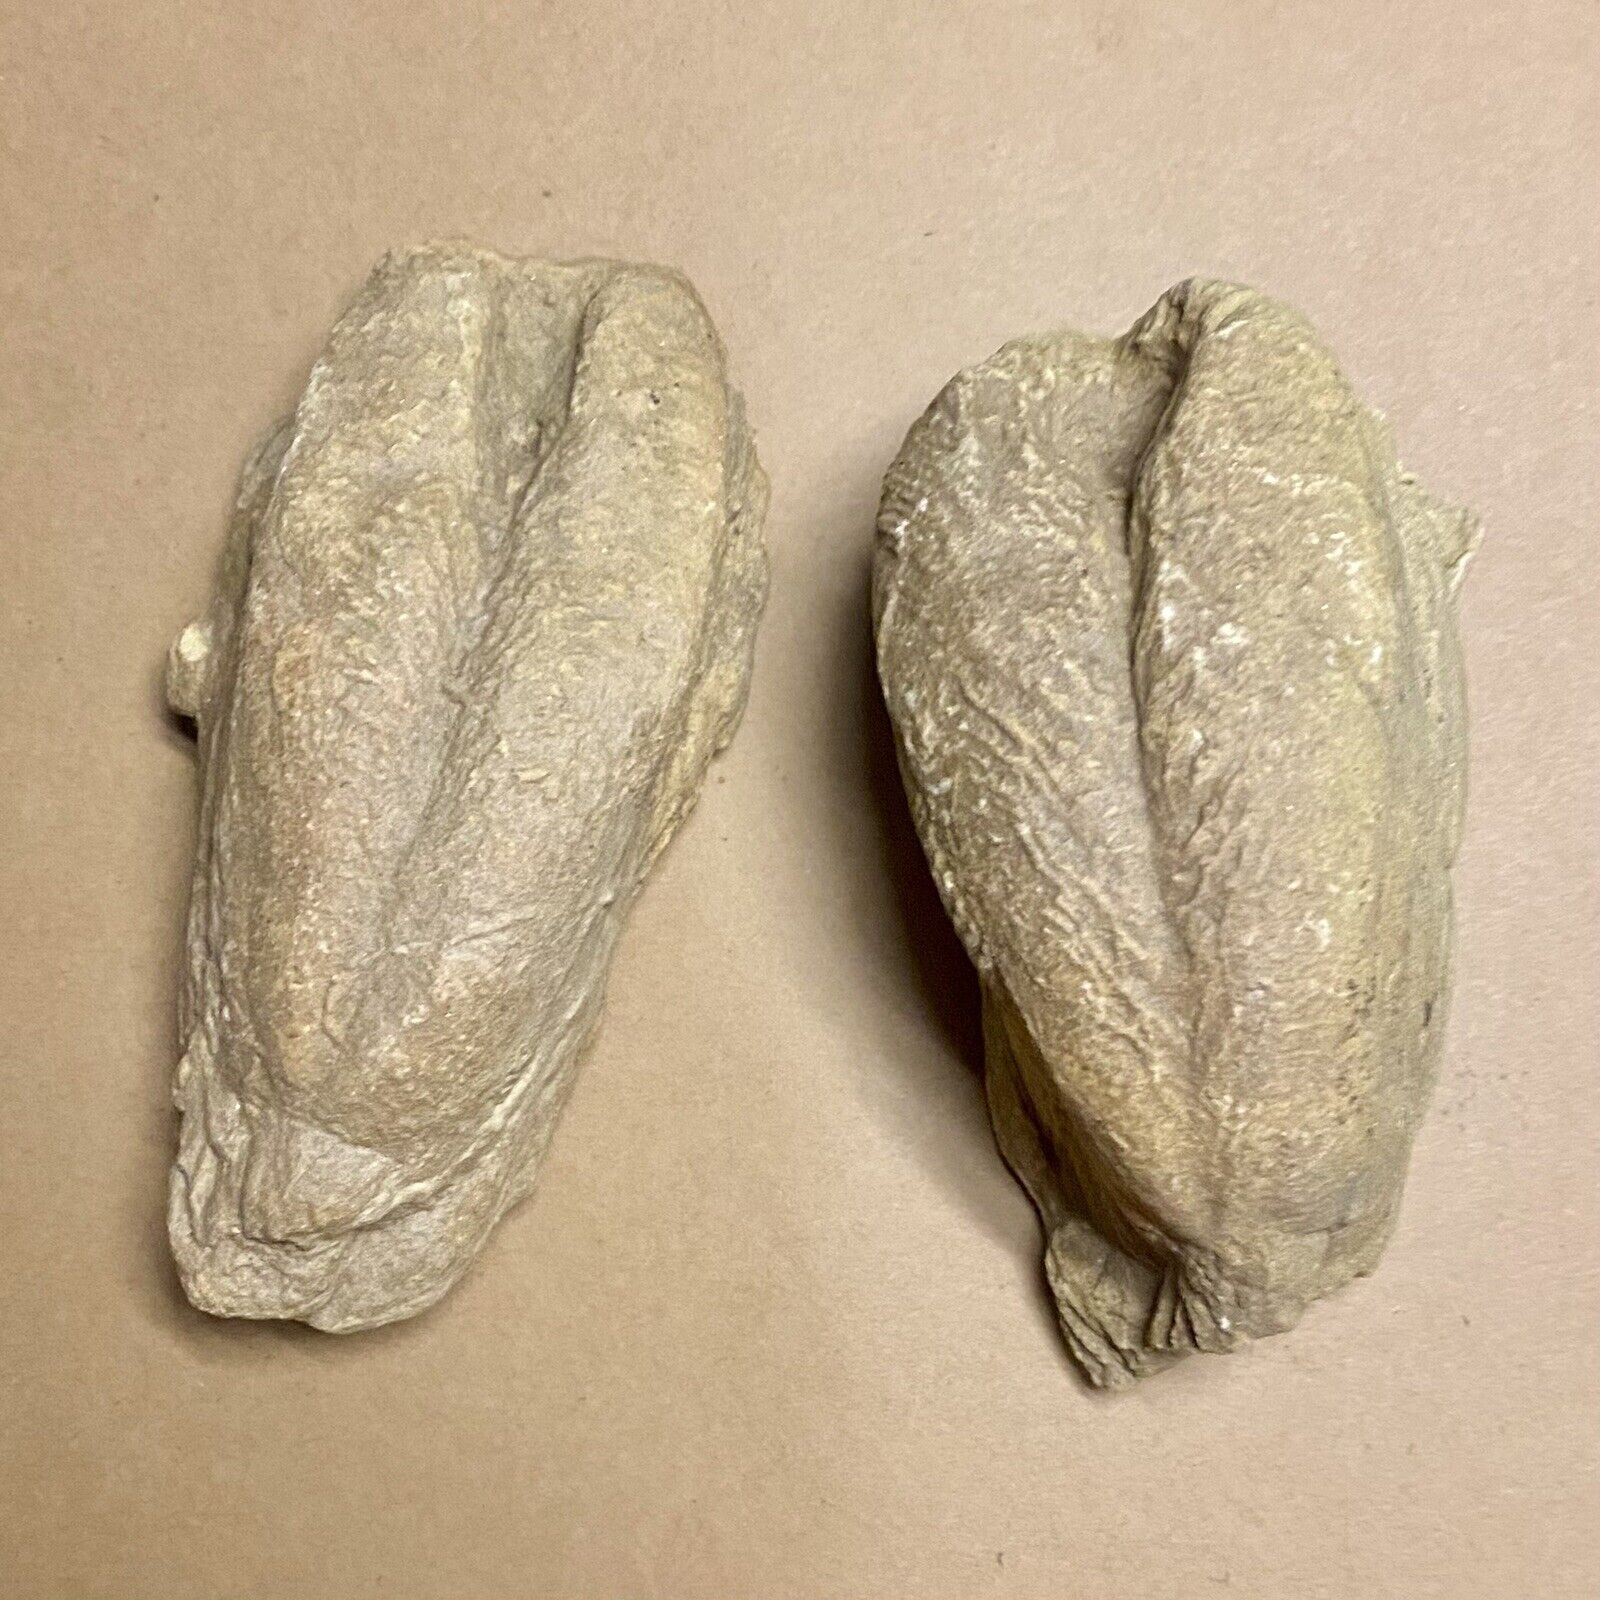 2 Rare Fossils - Trilobite Rusophycus/Cruziana (Burrow) Nest, Wyoming